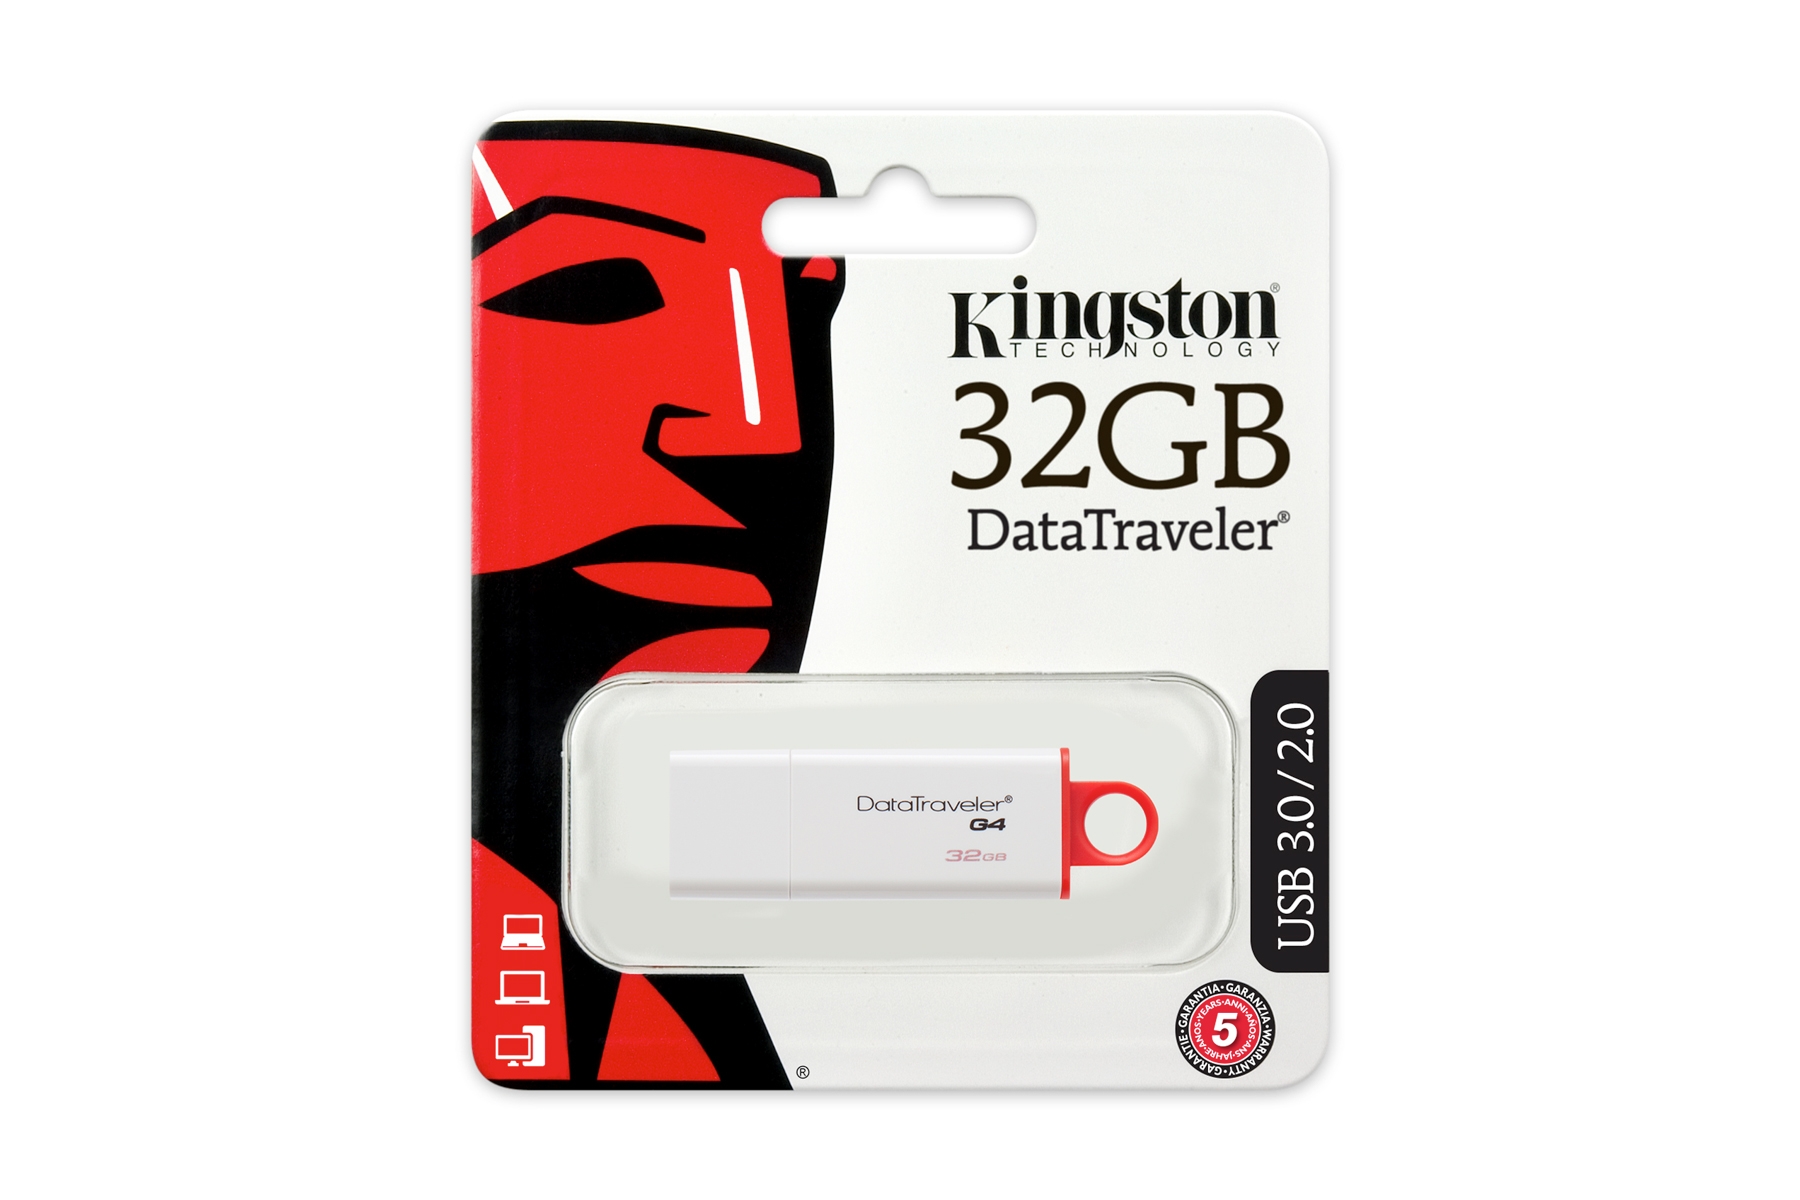 USB Stick 32GB Kingston DTIG4 3.0